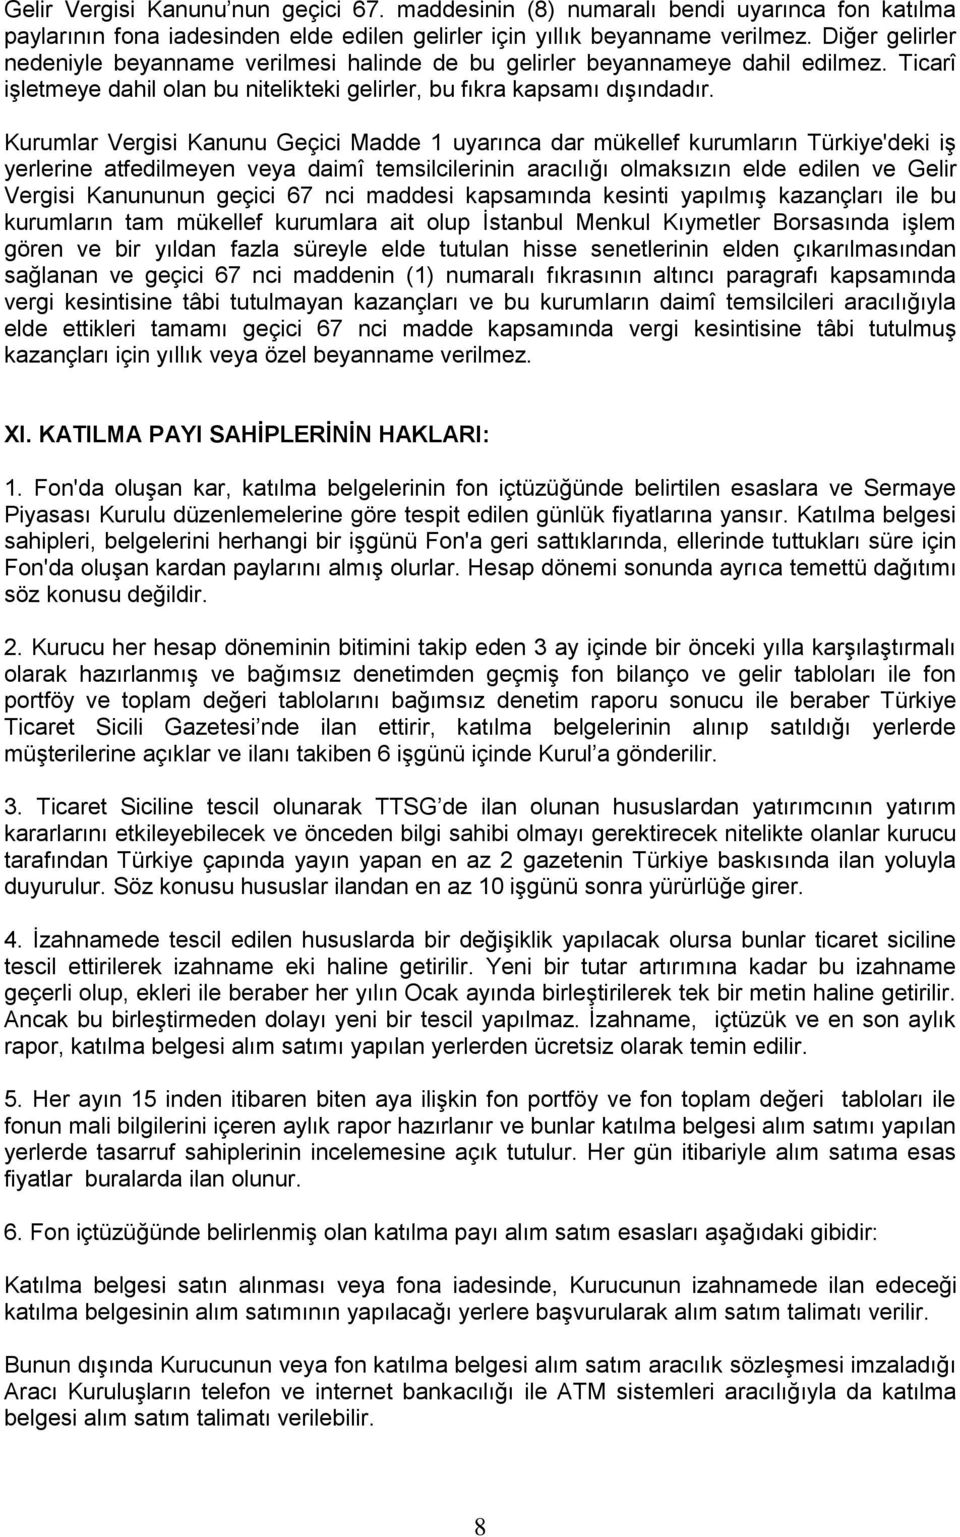 Kurumlar Vergisi Kanunu Geçici Madde 1 uyarınca dar mükellef kurumların Türkiye'deki iģ yerlerine atfedilmeyen veya daimî temsilcilerinin aracılığı olmaksızın elde edilen ve Gelir Vergisi Kanununun